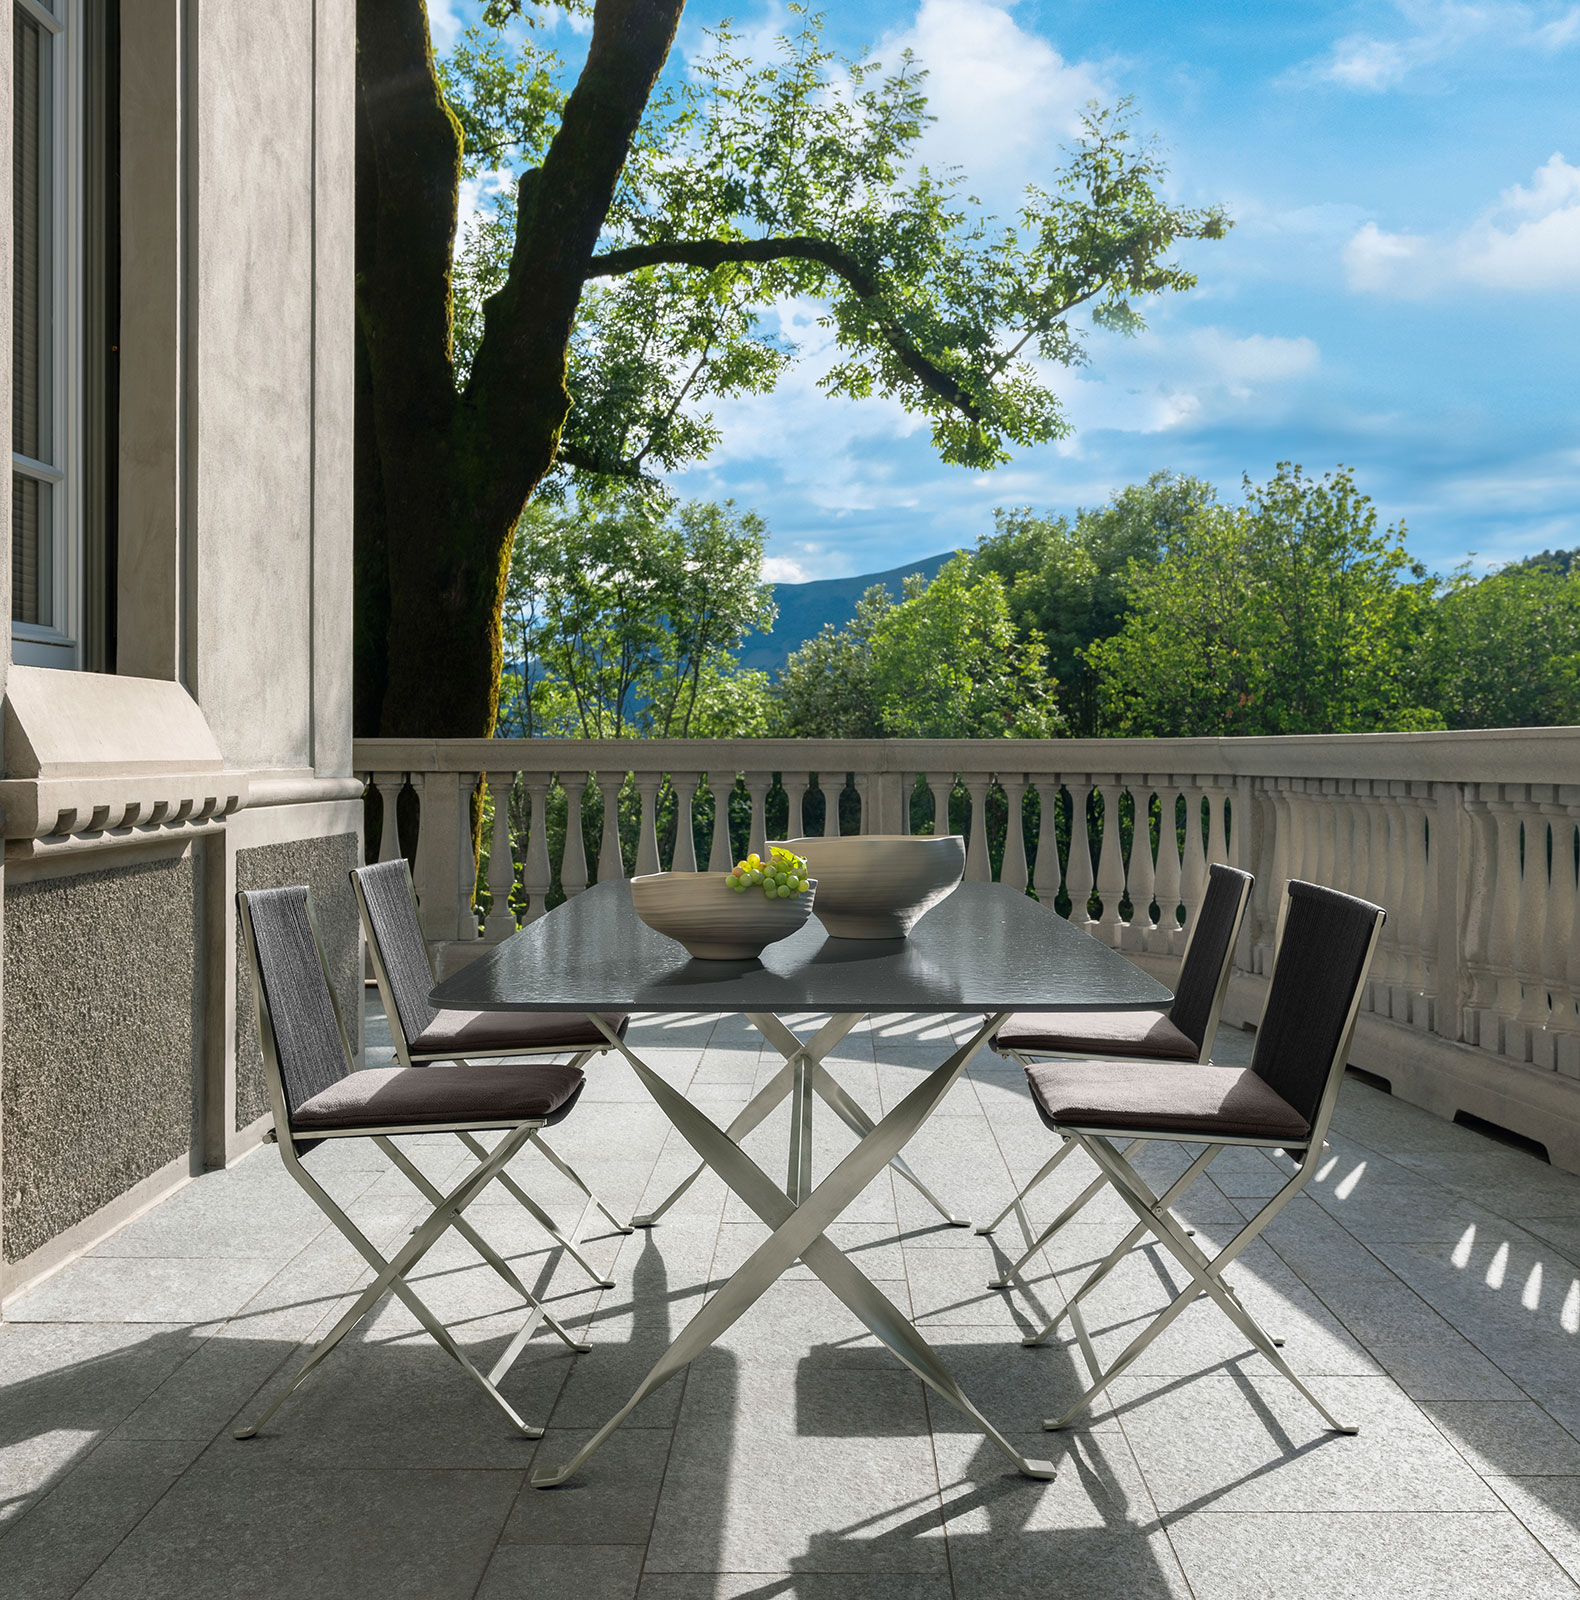 Tavolo da pranzo da esterno rettangolare con pietra lavica grigia. Acquistate i nostri mobili di lusso per giardini e terrazze con consegna gratuita